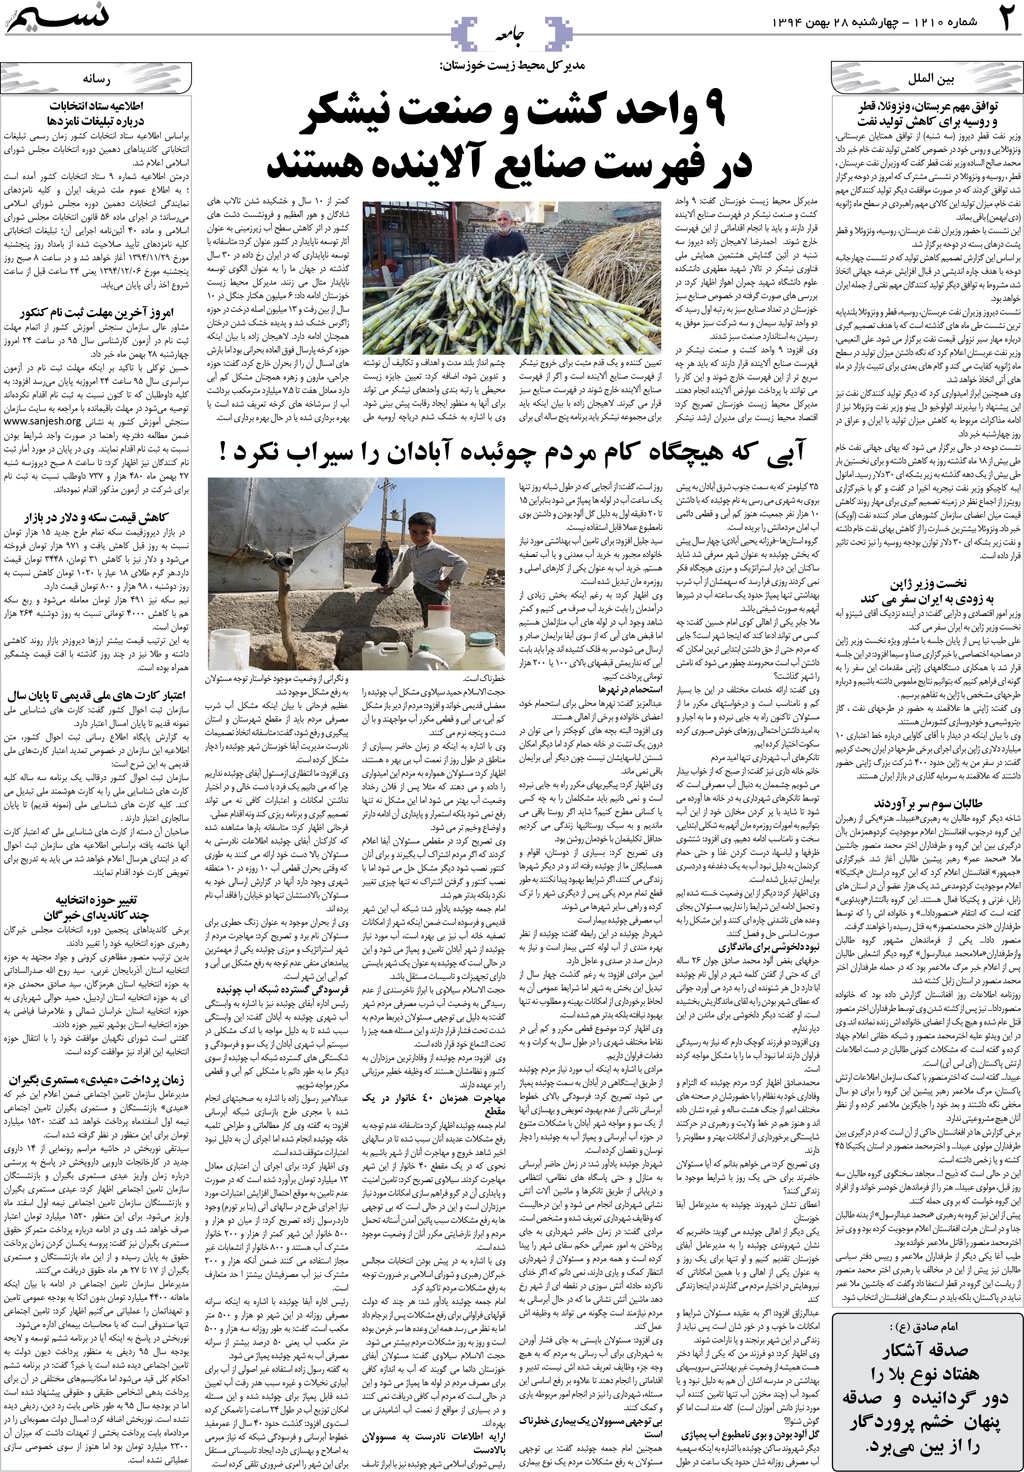 صفحه جامعه روزنامه نسیم شماره 1210